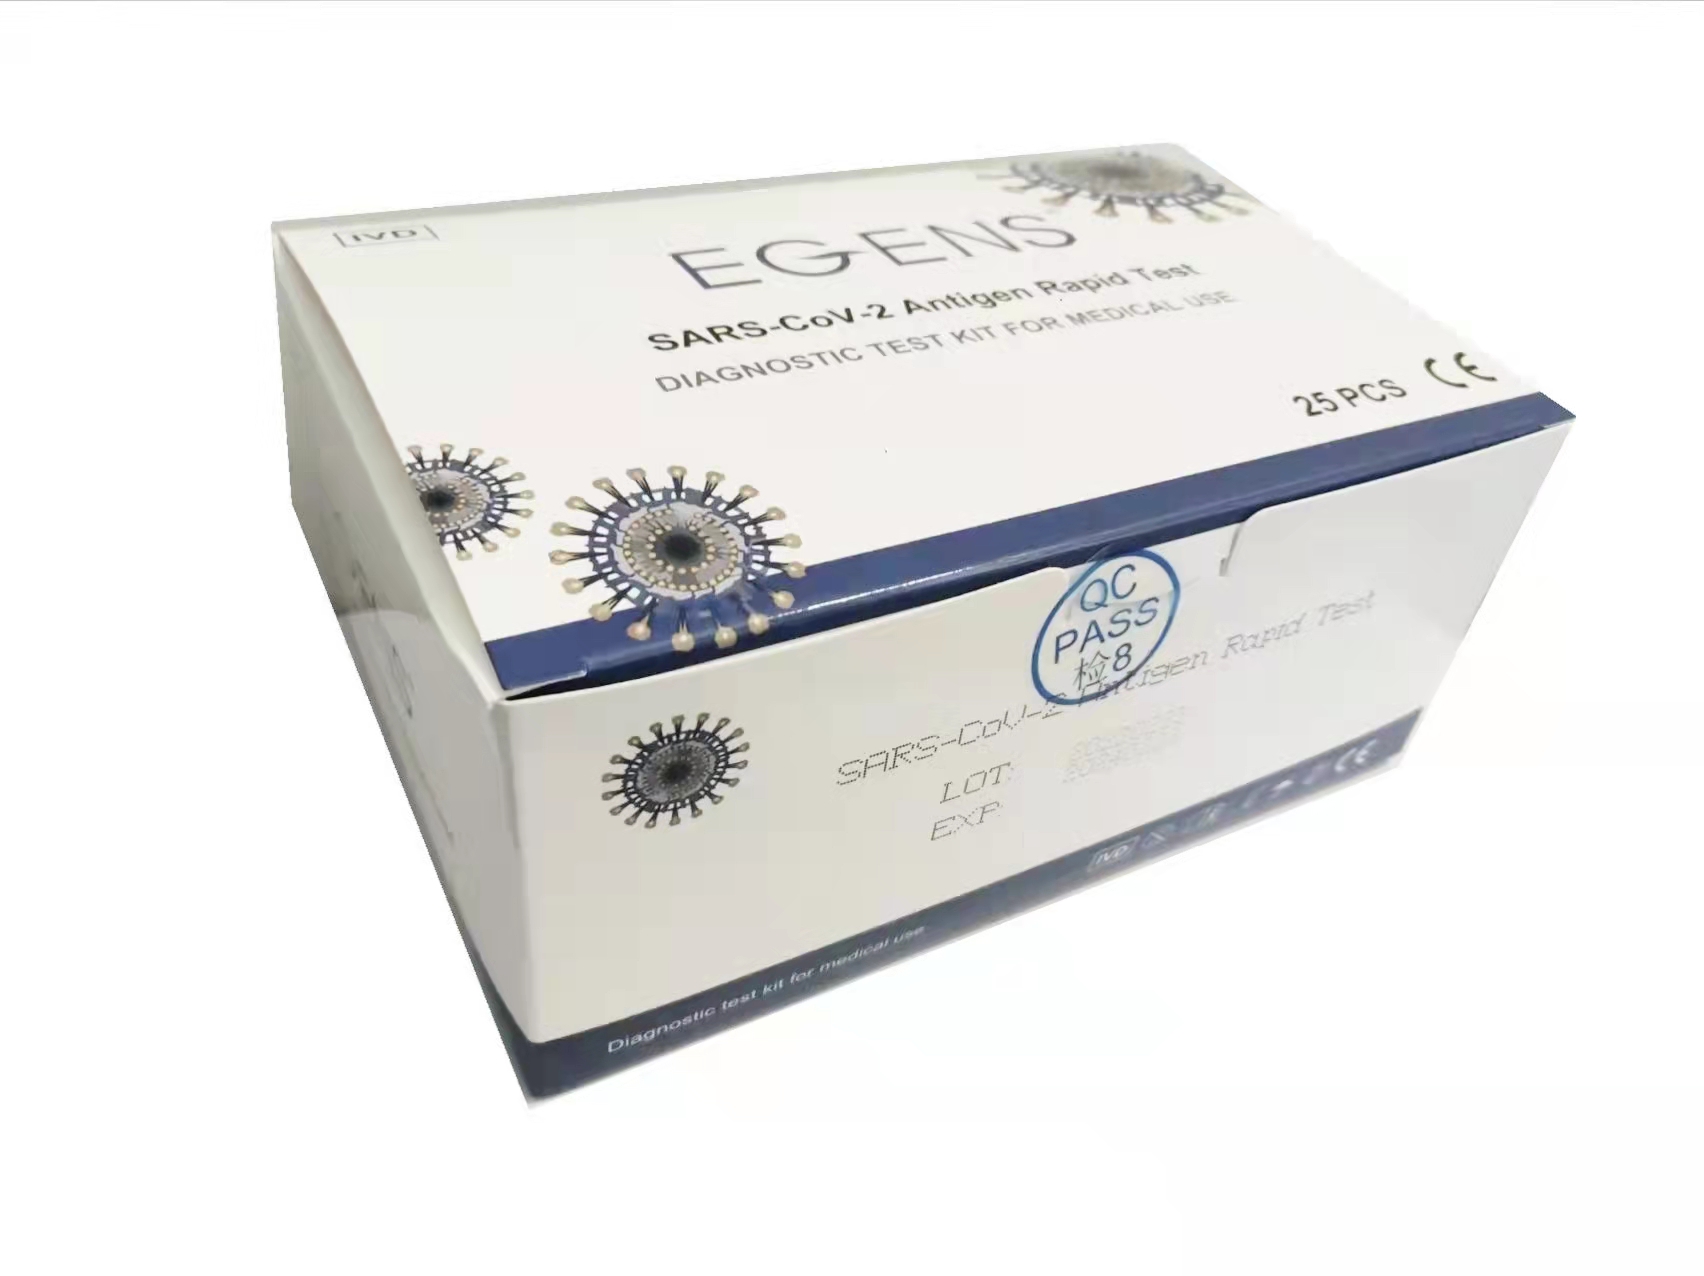      EGENS® COVID-19 Antigen Nasen-Rachen Schnelltest 3 in 1, 25er/Box, 1 Karton 1000 Test, nur an medizinisches Fachpersonal  Kopie